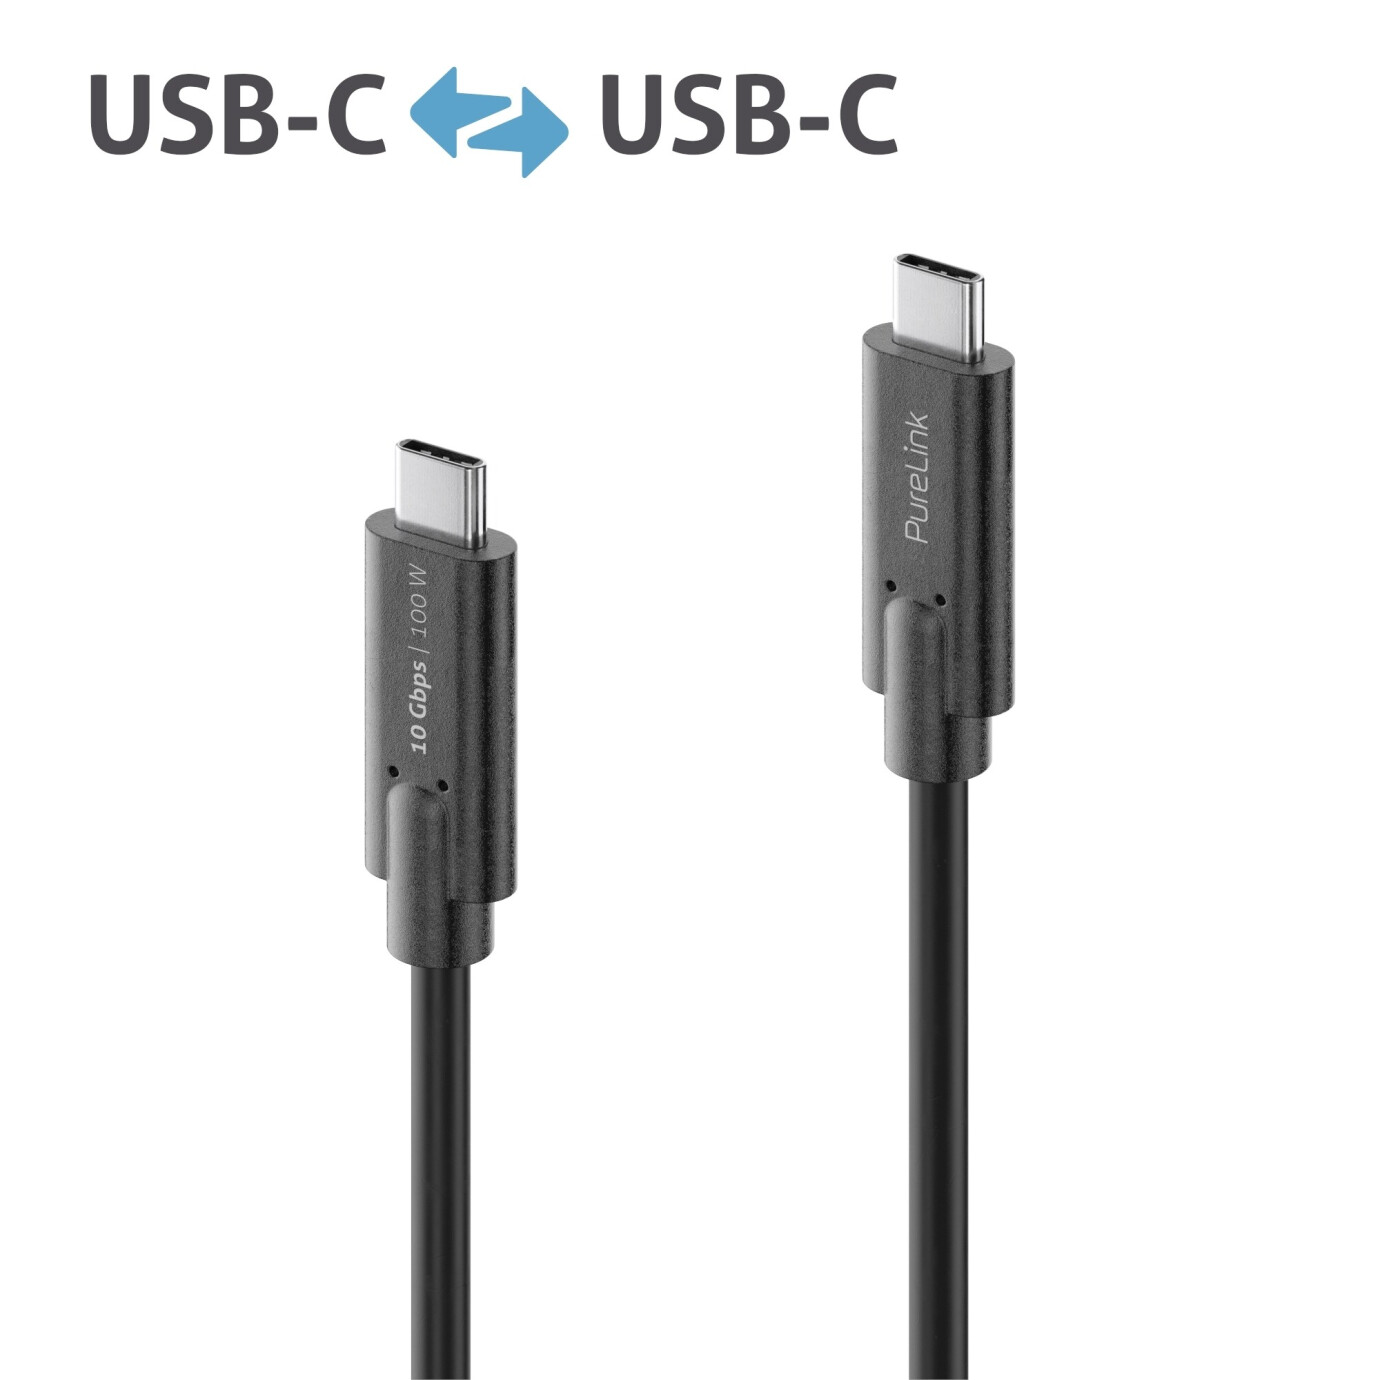 Purelink IS2511-010 USB-C auf USB-C (Gen 2) Kabel 1m schwarz